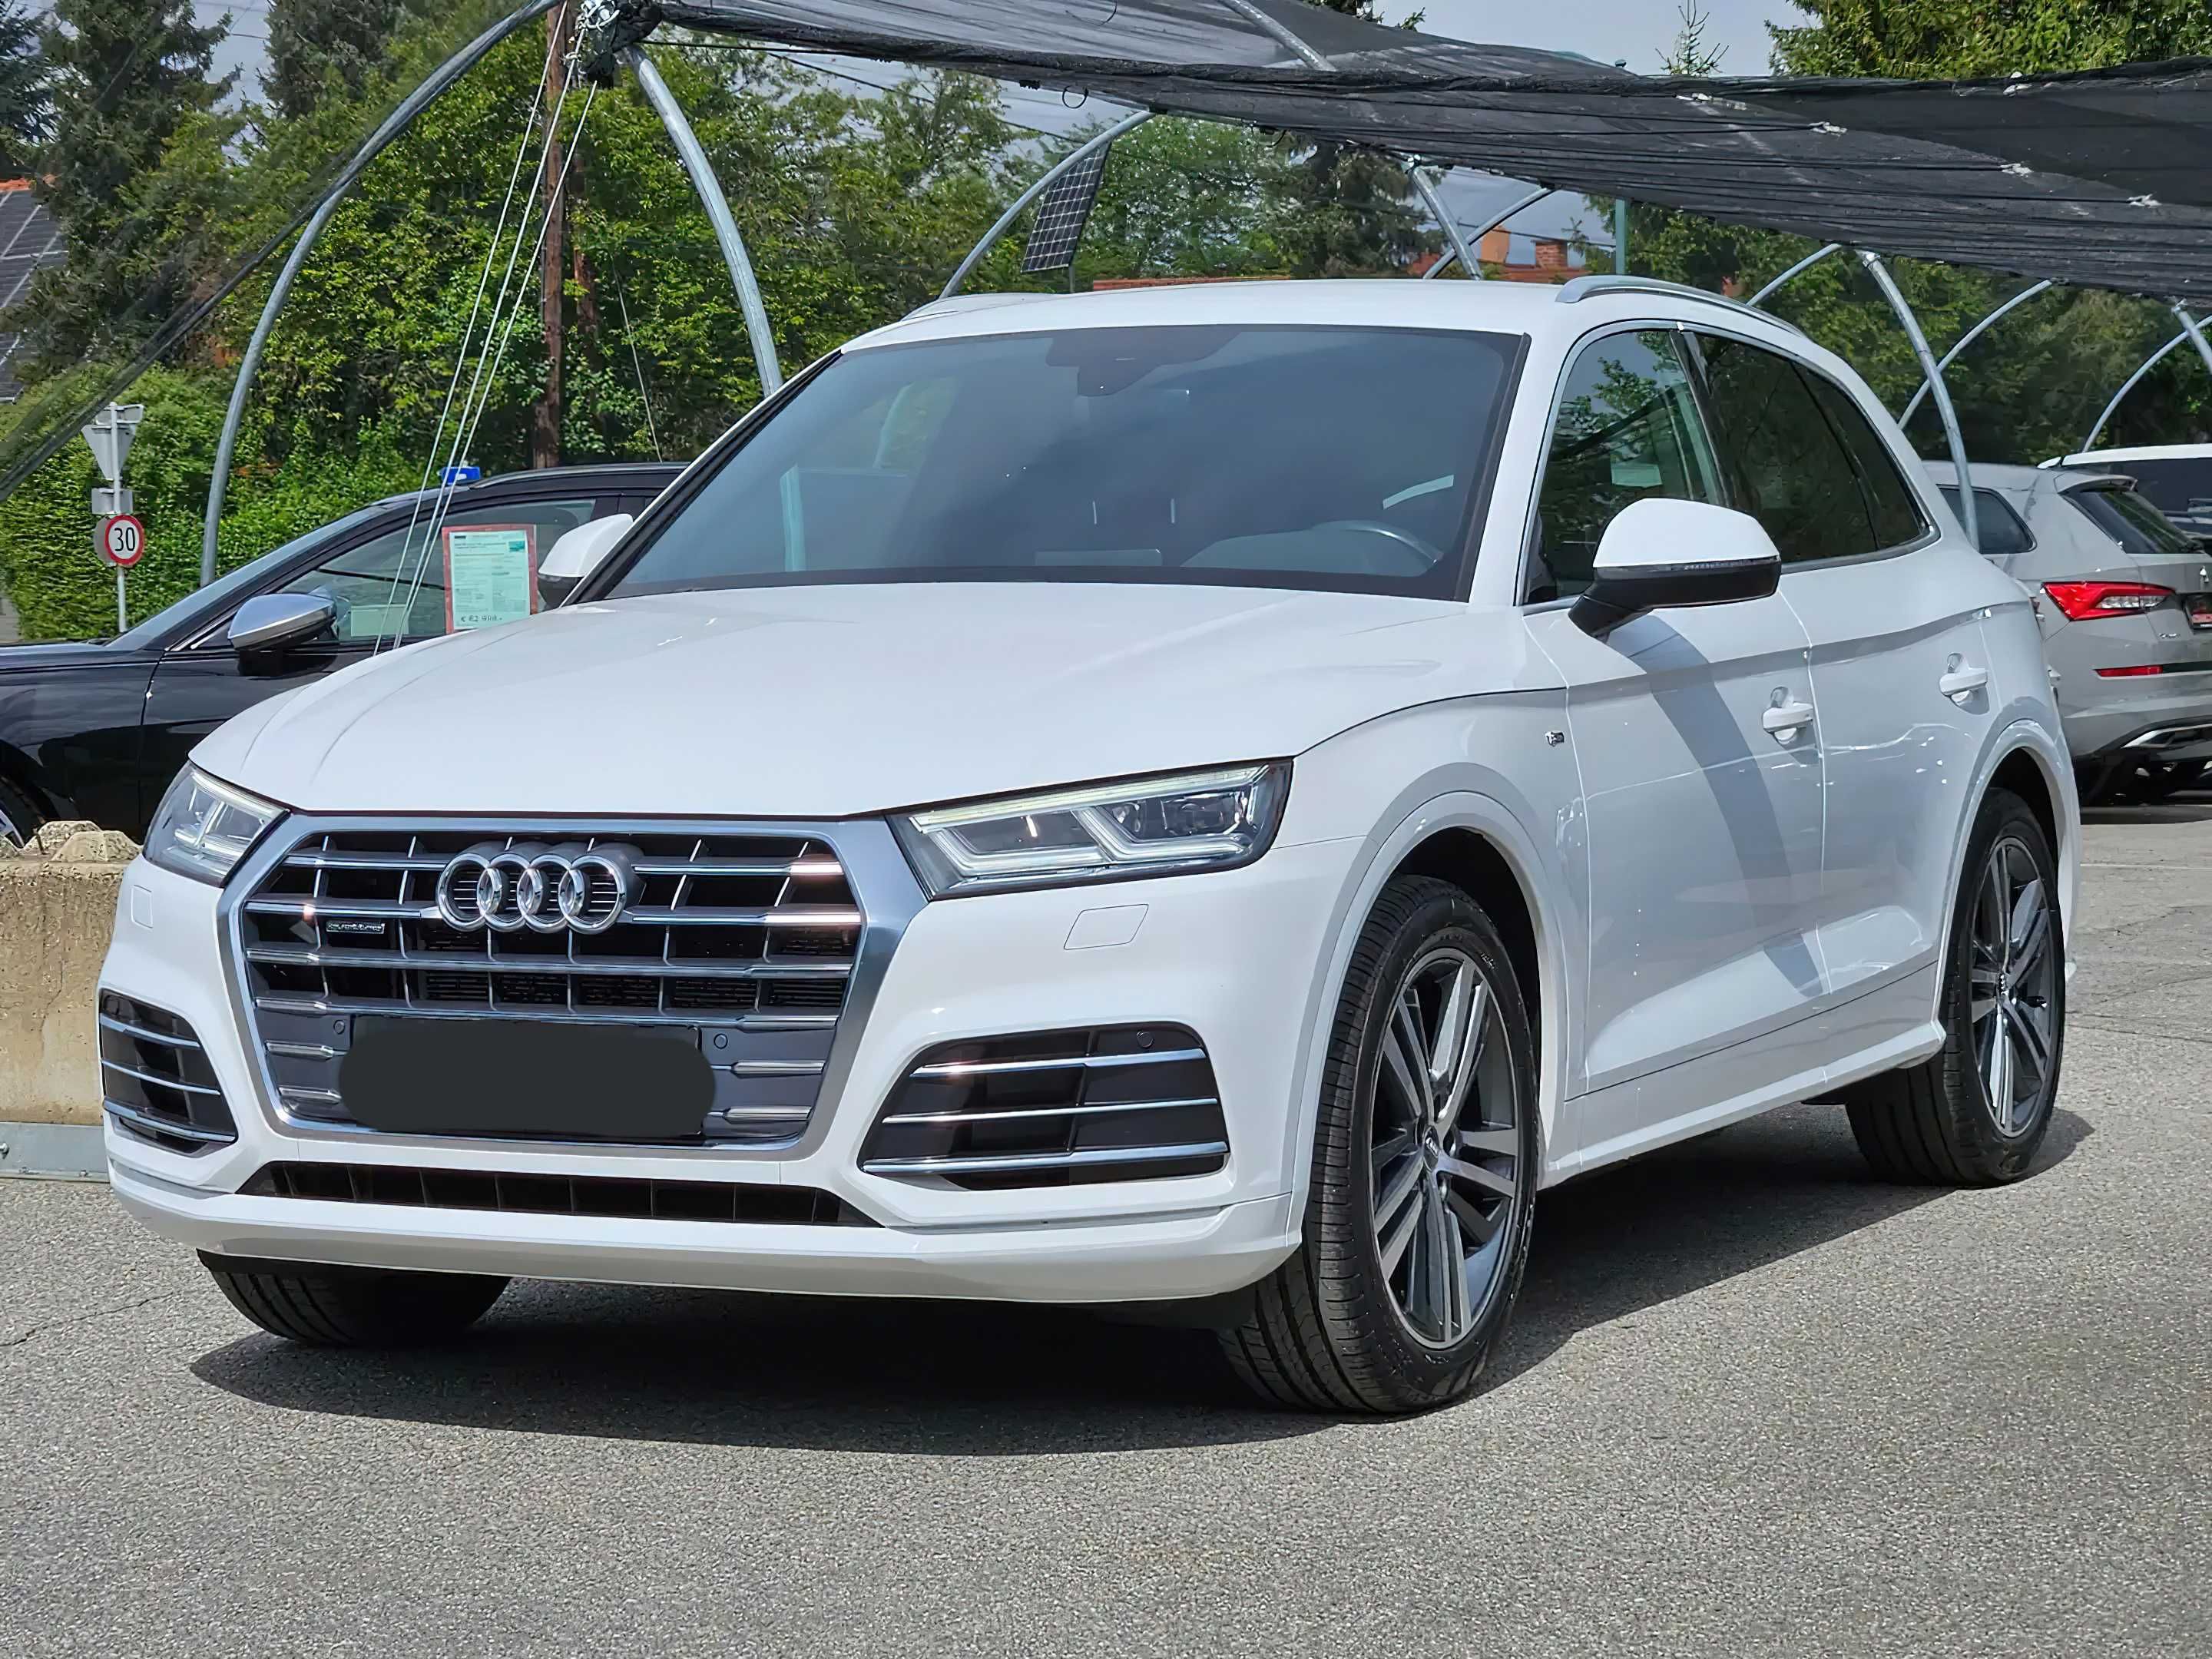 Audi Q5 2018 White